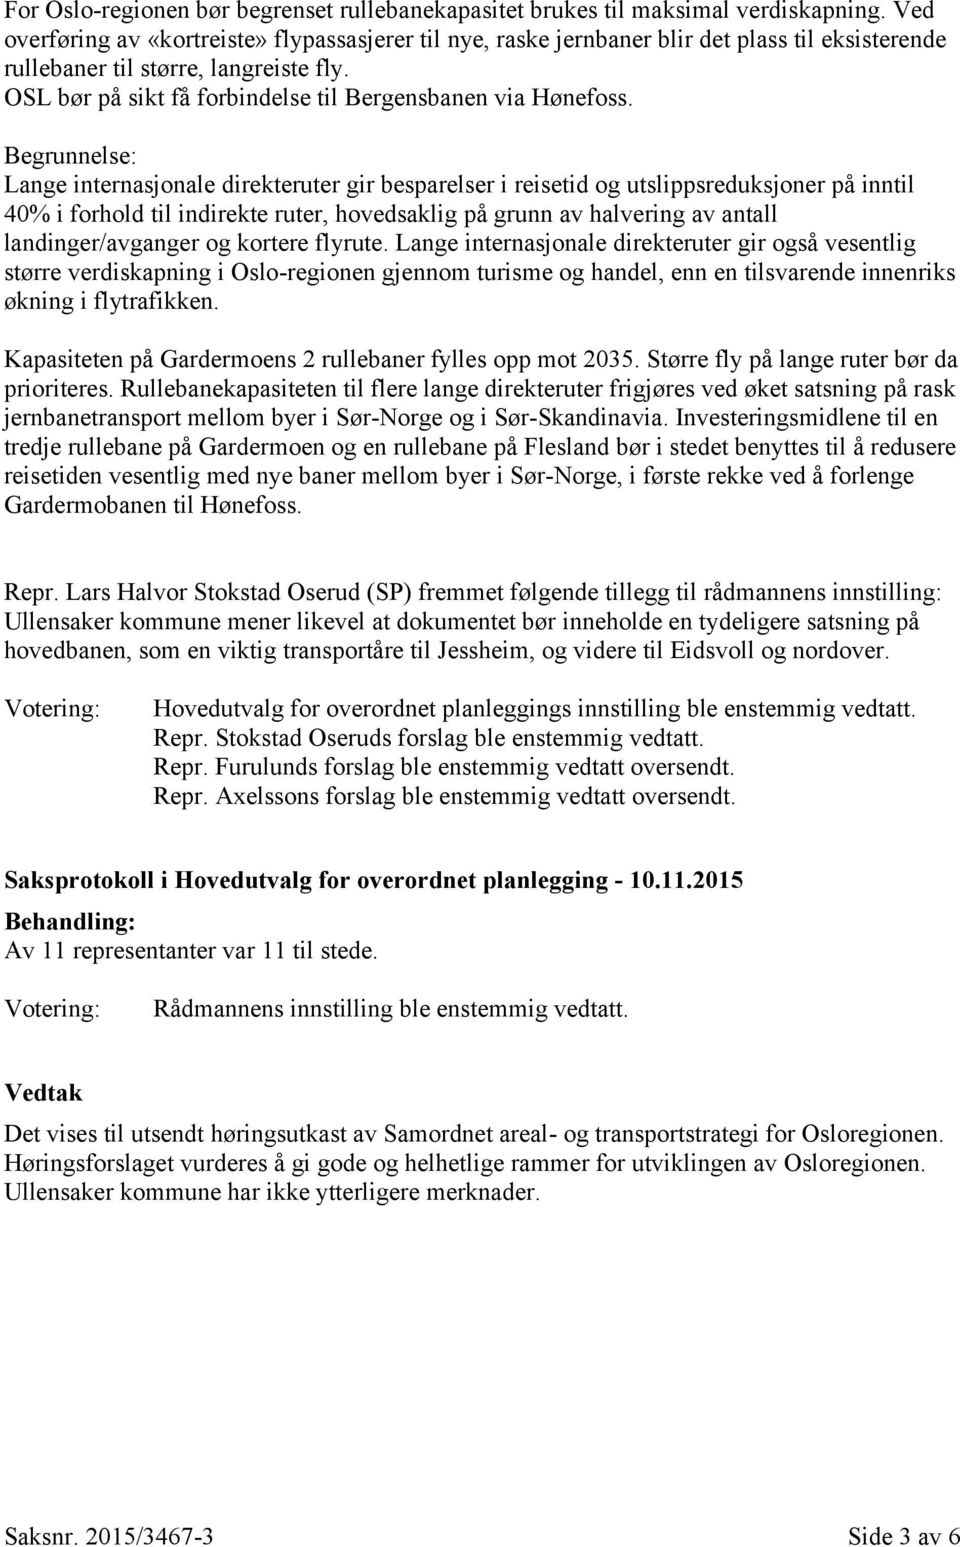 OSL bør på sikt få forbindelse til Bergensbanen via Hønefoss.